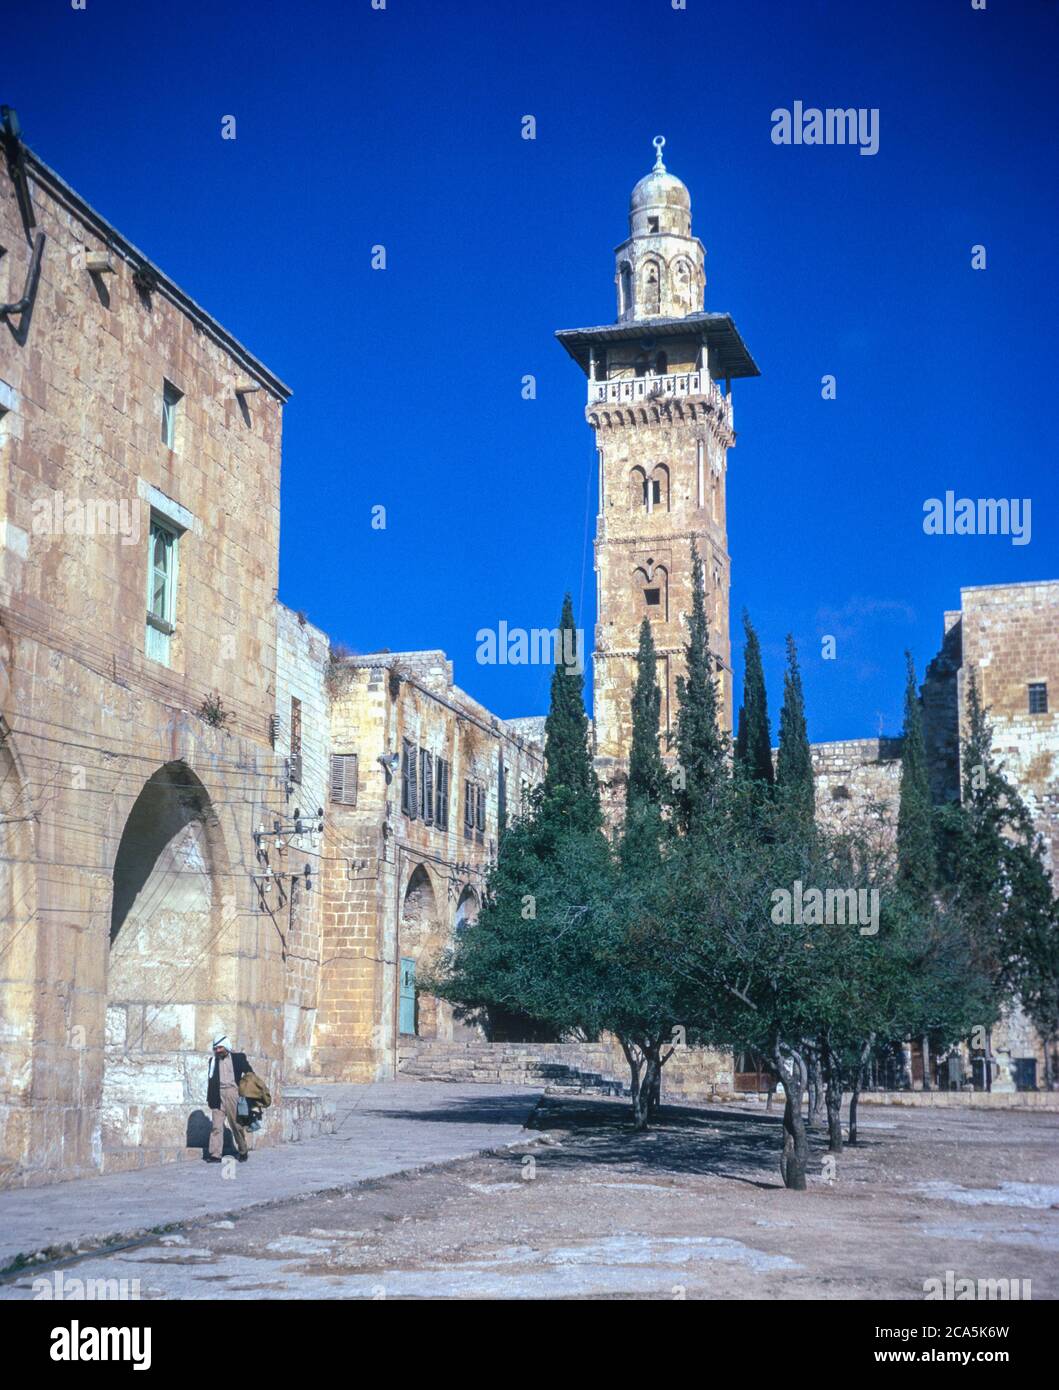 Jérusalem. Minaret de Ghawanima, construit en 1297-98 A.D., dans le Haram Ash-Sharif. Photographié en novembre 1966, sous administration jordanienne. Banque D'Images